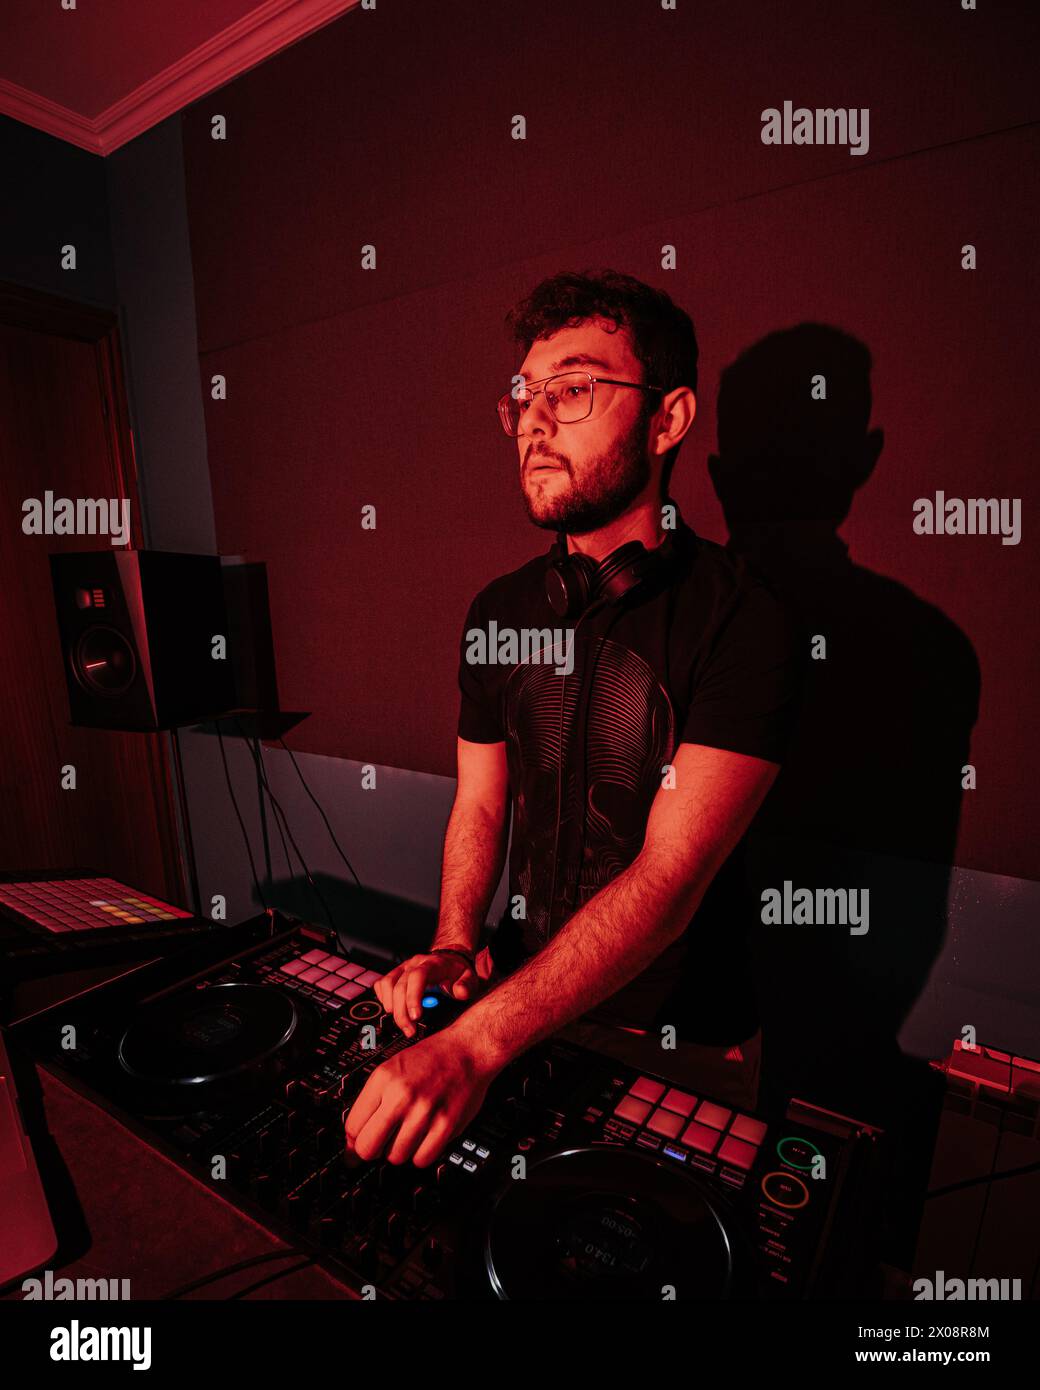 Ein konzentrierter DJ mischt Songs auf einem professionellen DJ-Deck, hervorgehoben durch die rote Beleuchtung, und schafft so eine stimmungsvolle Club-Umgebung Stockfoto